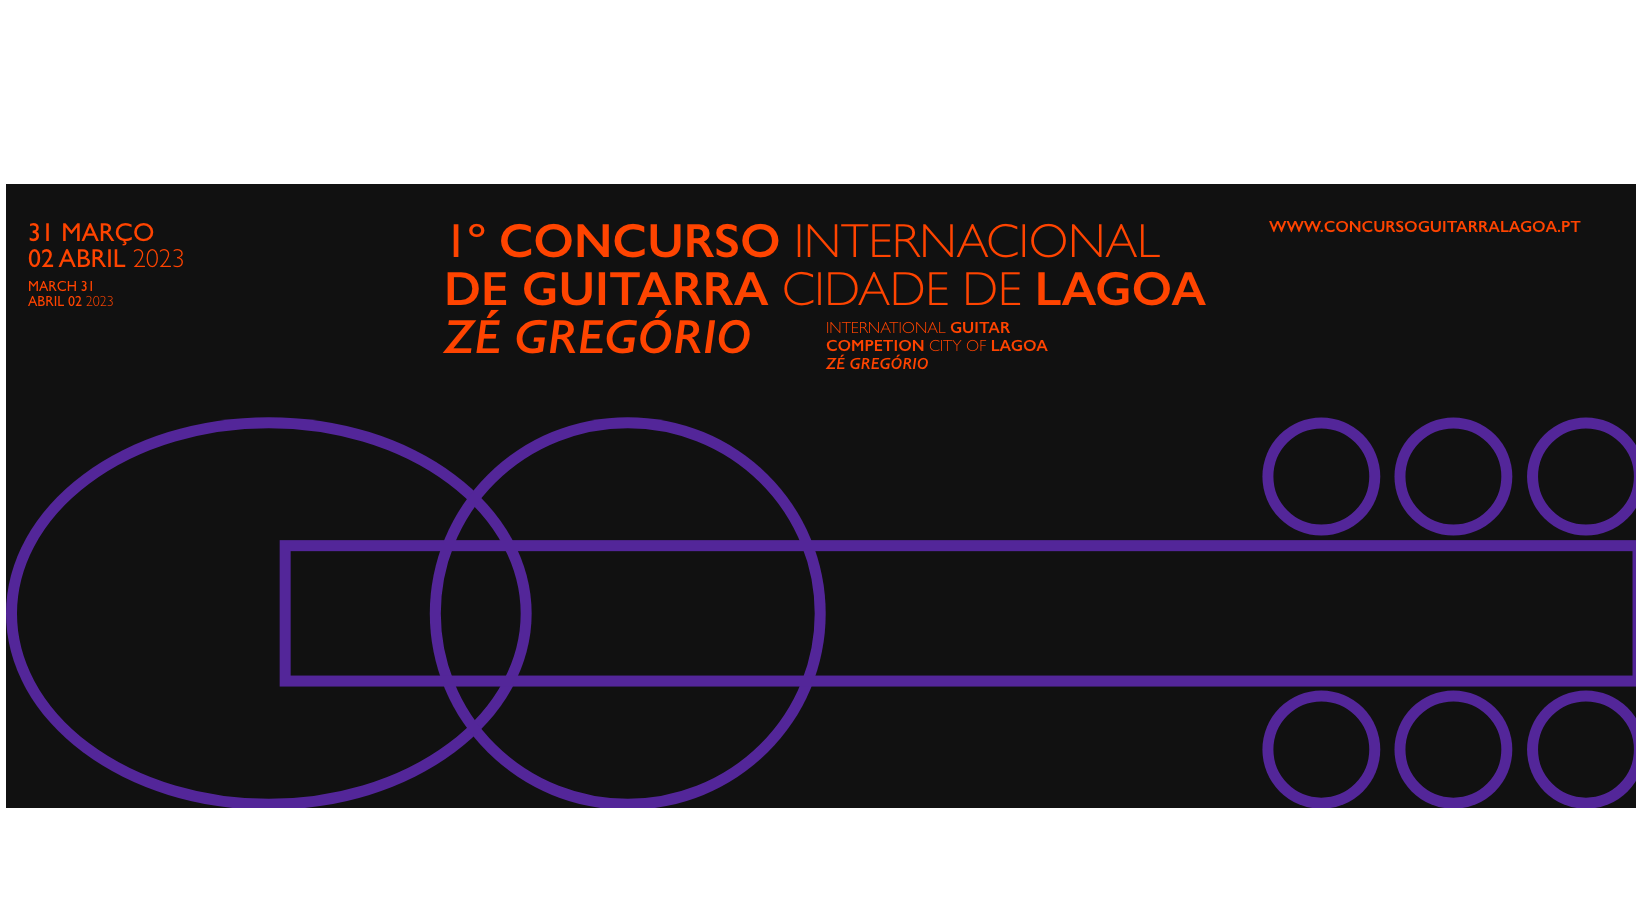 Concurso Internacional de Guitarra Cidade de Lagoa - Zé Gregório